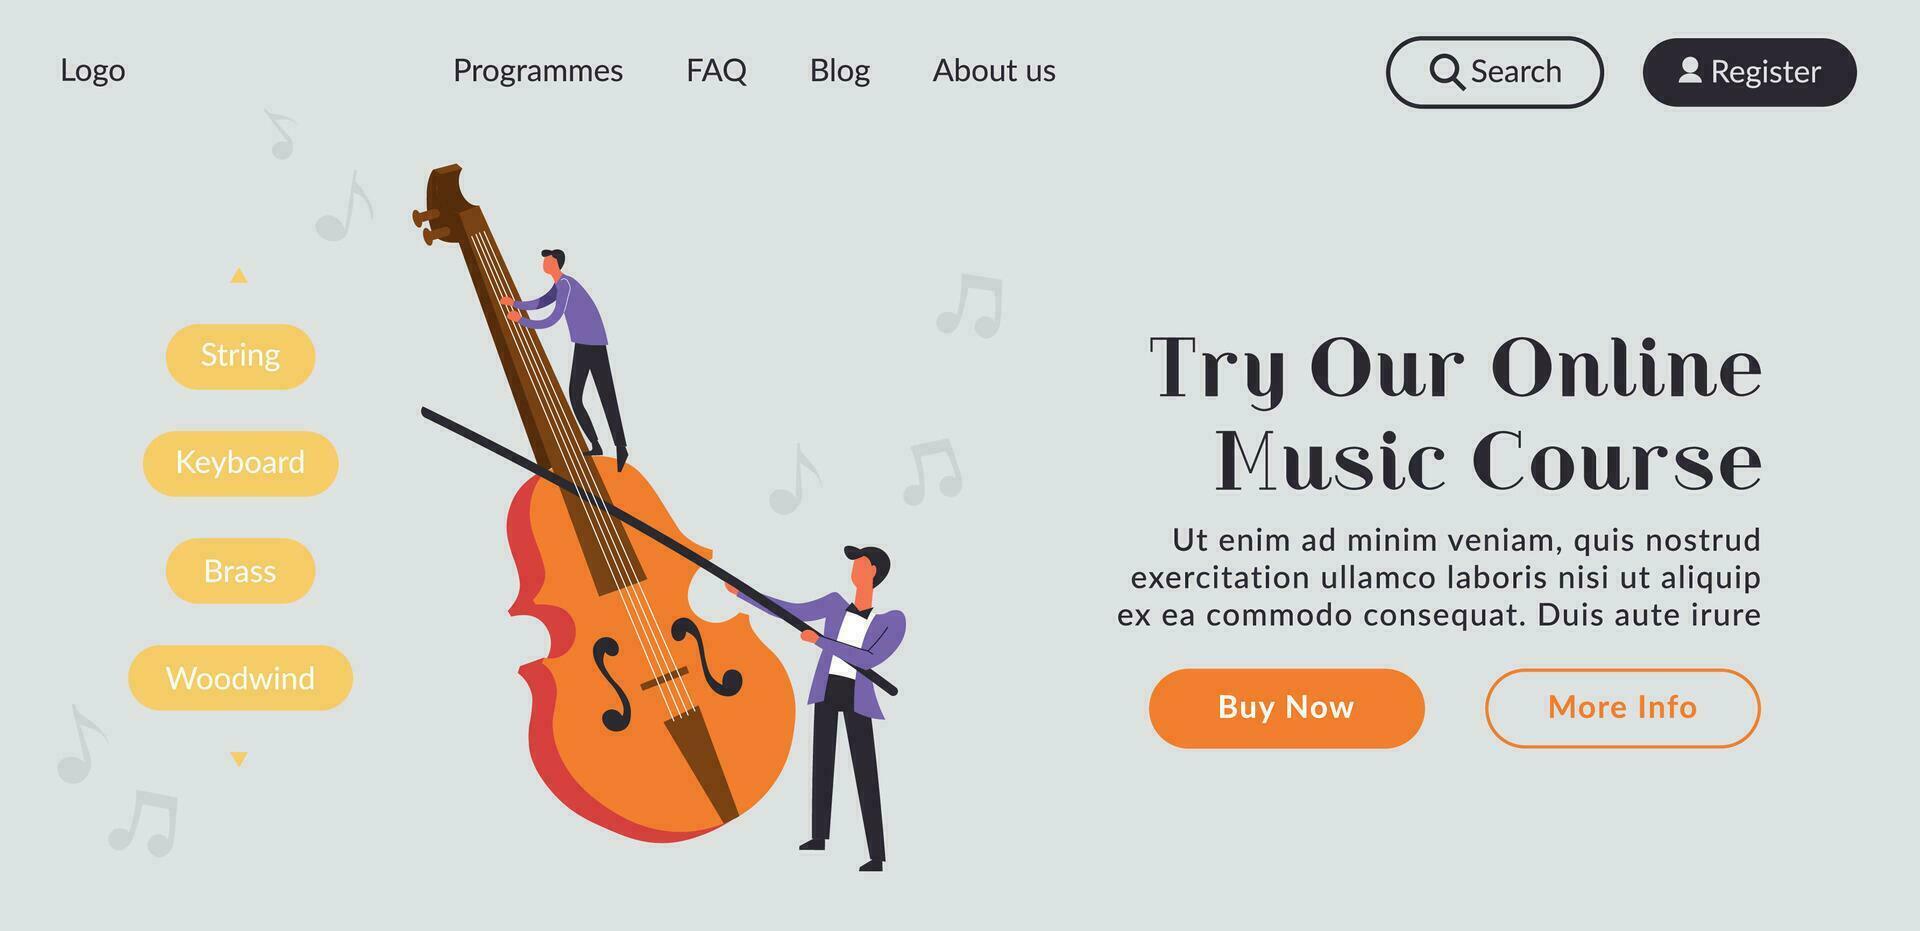 en línea música curso y clases en violín, sitio web vector